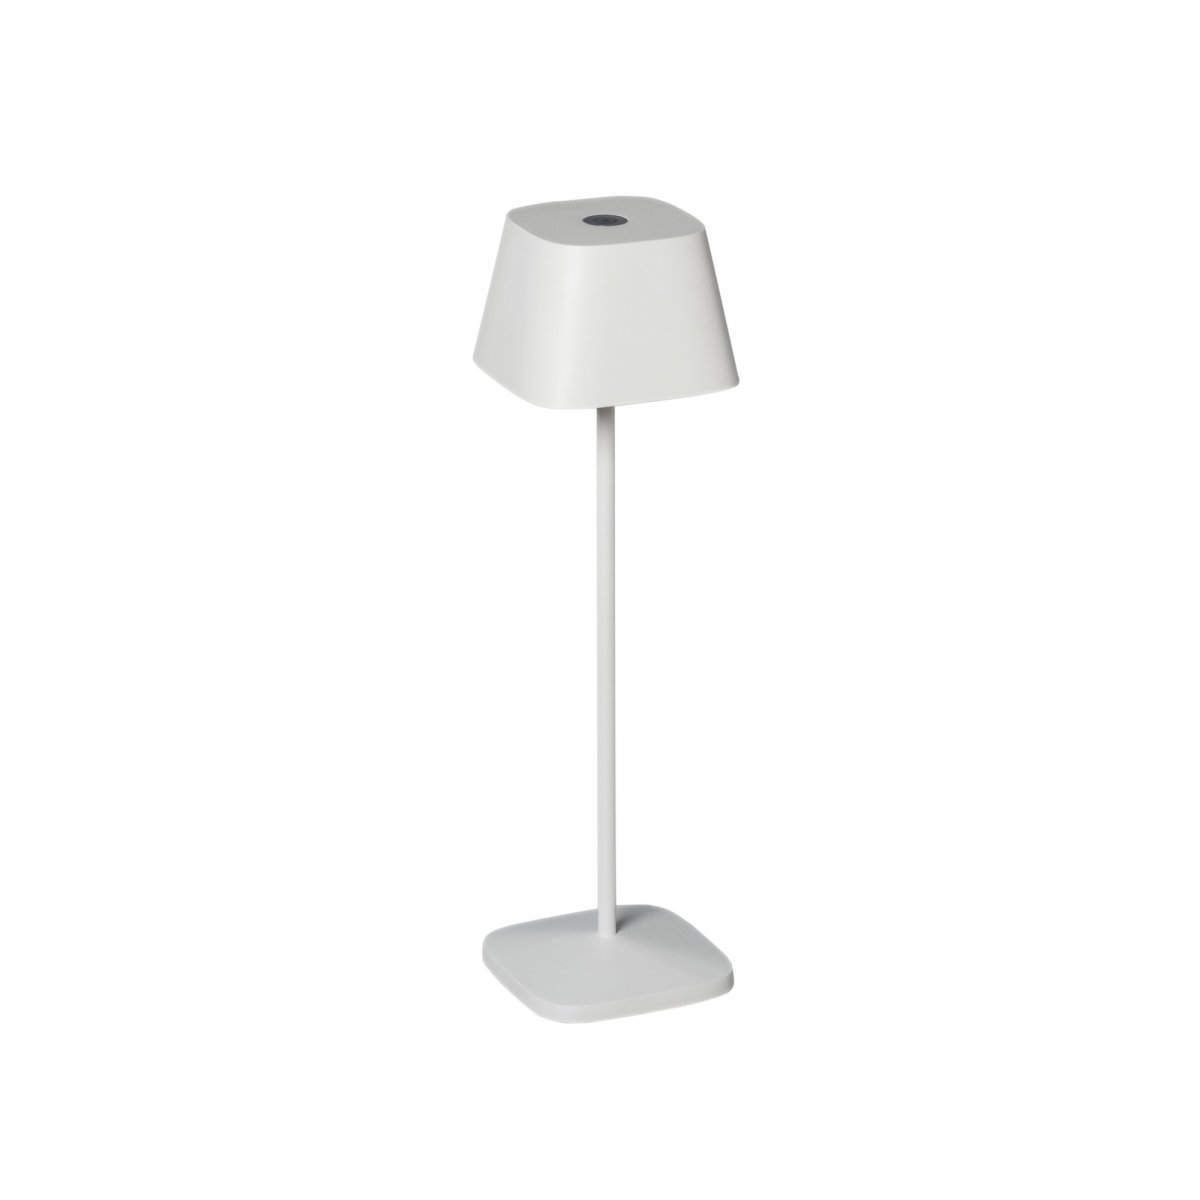 KONSTSMIDE No. 7814-250 USB Tischleuchte Capri weiß dimmbar IP54 -->  Leuchten & Lampen online kaufen im Shop